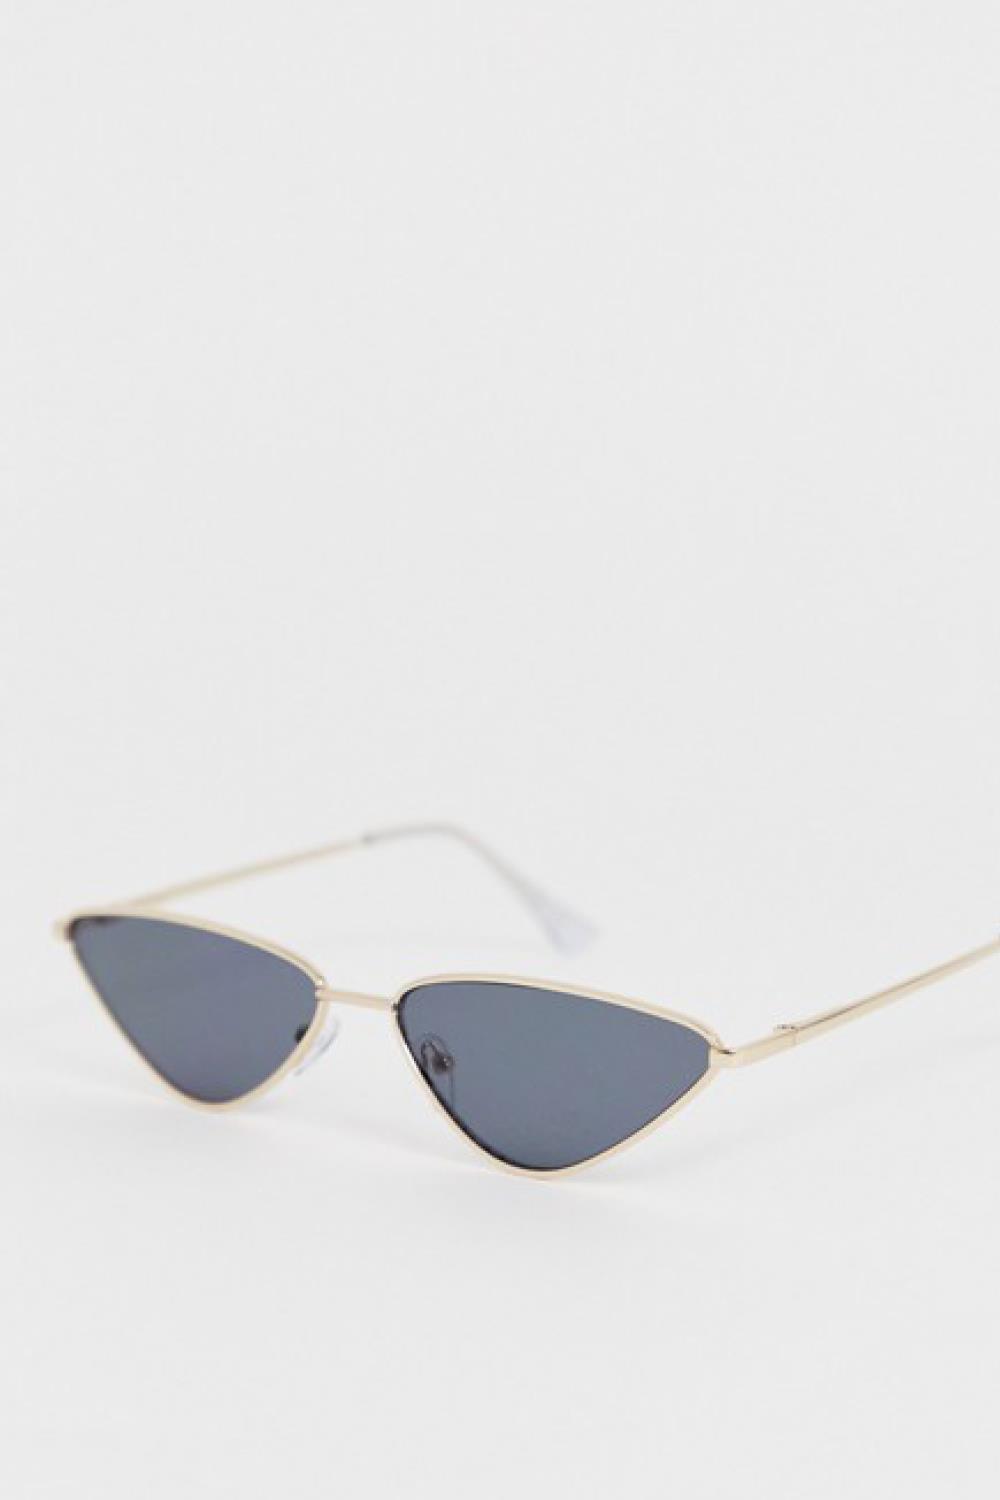 prendas y accesorios de moda verano 2019 gafas de sol pieces 16,99€